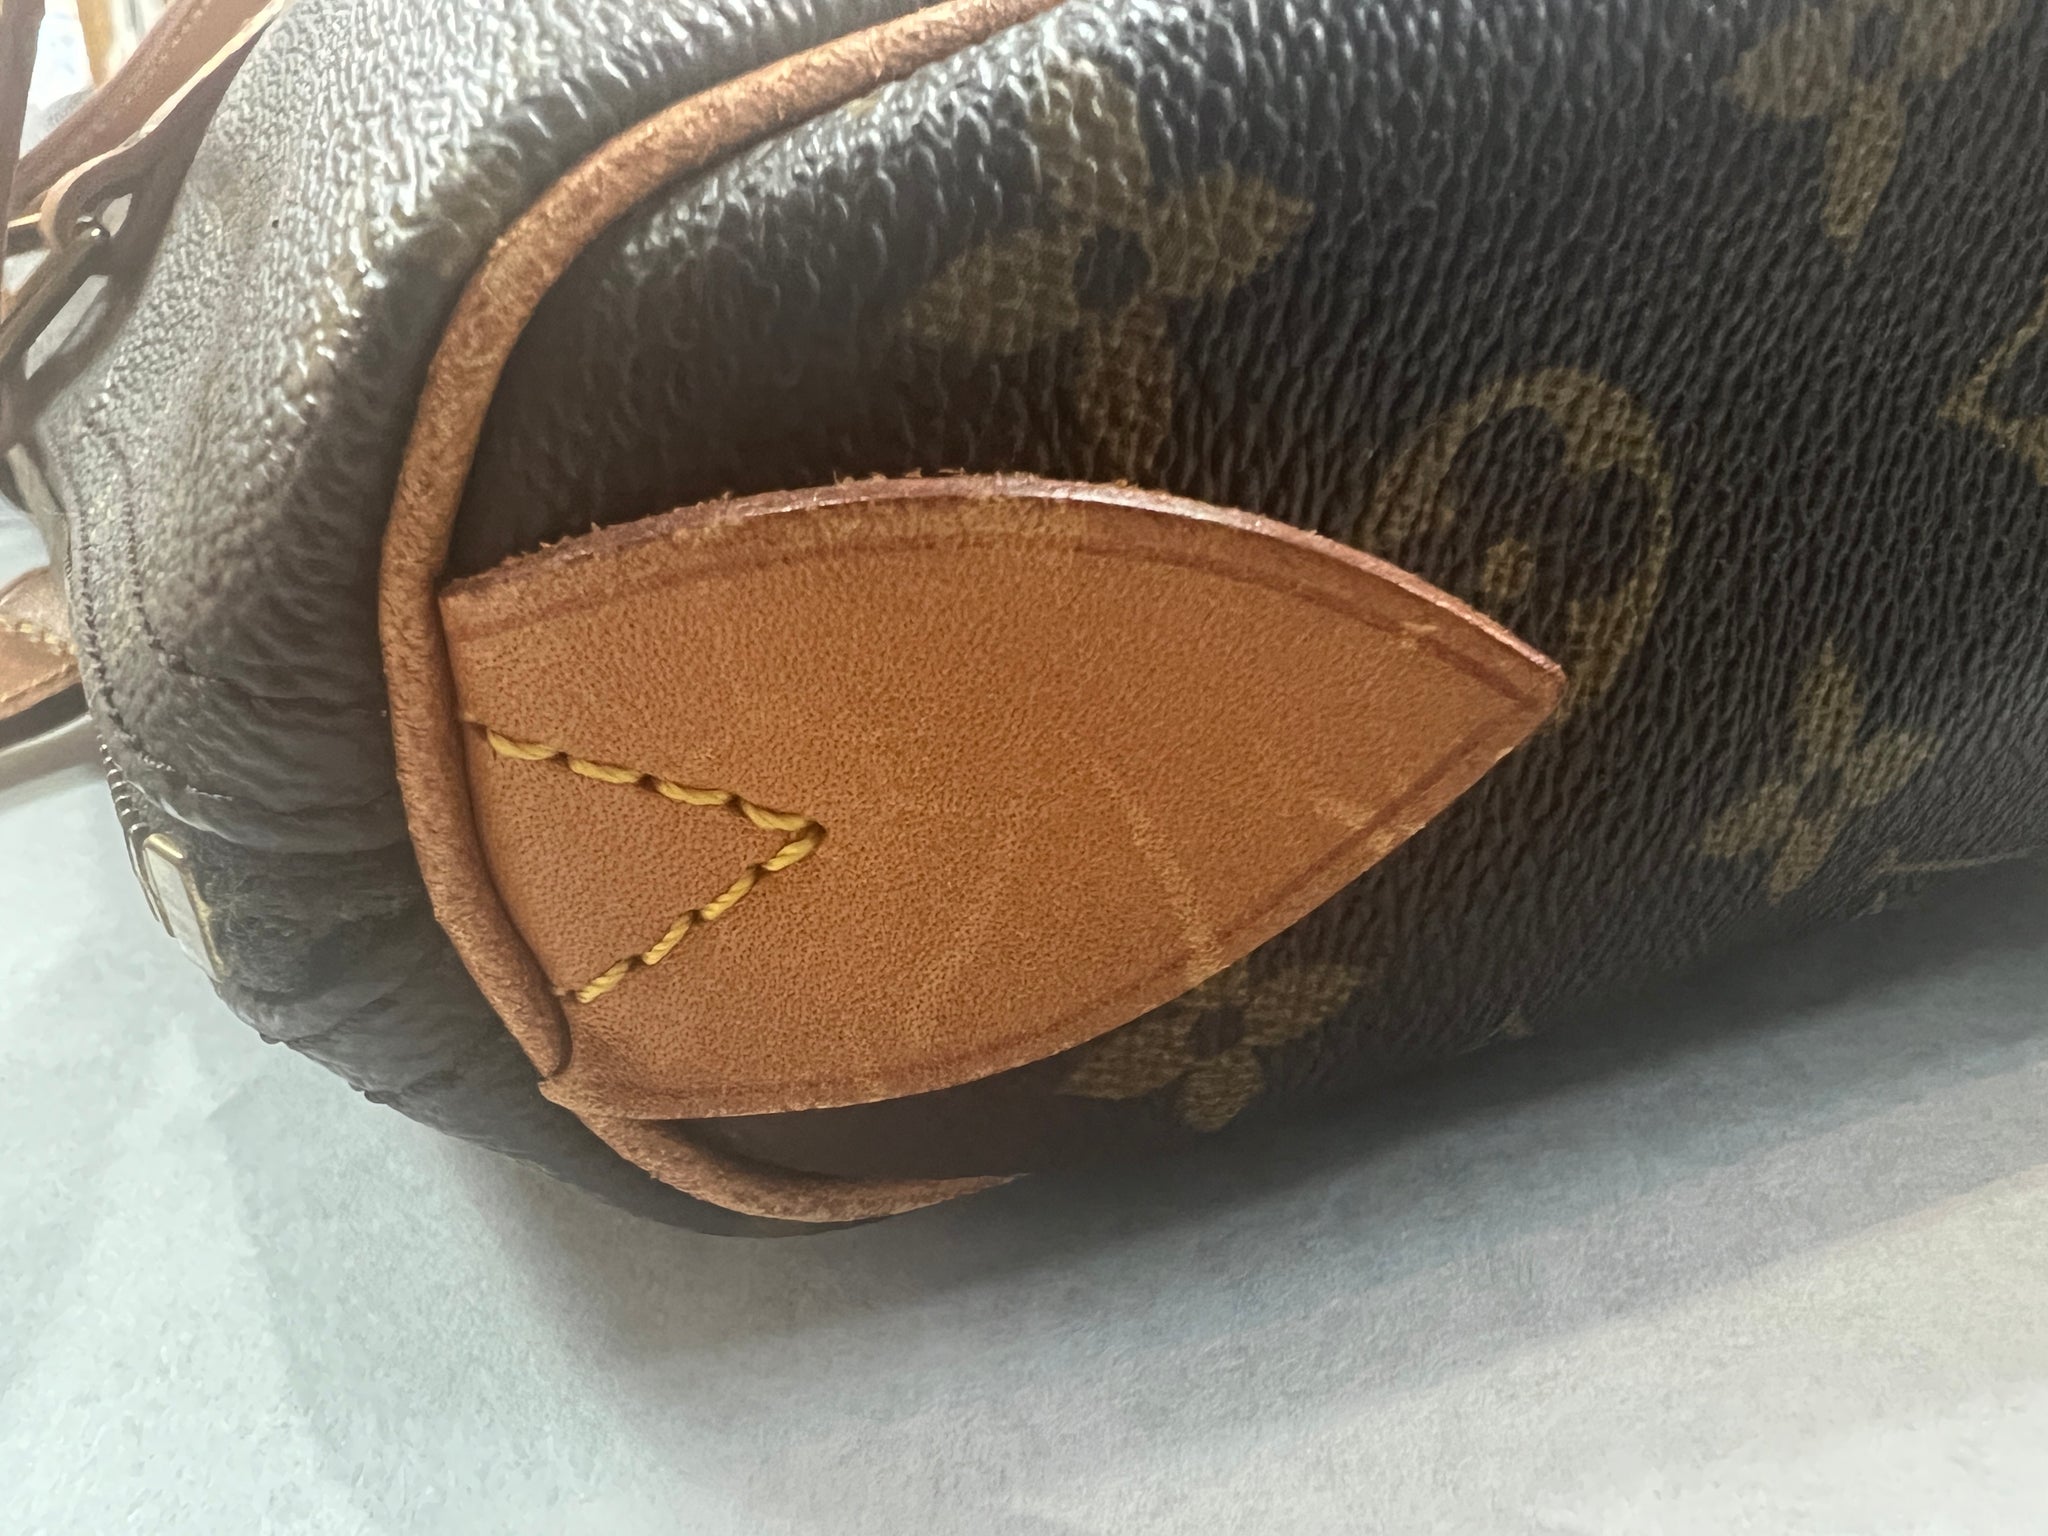 Louis Vuitton, Bags, Authentic Louis Vuitton Zipper Tote